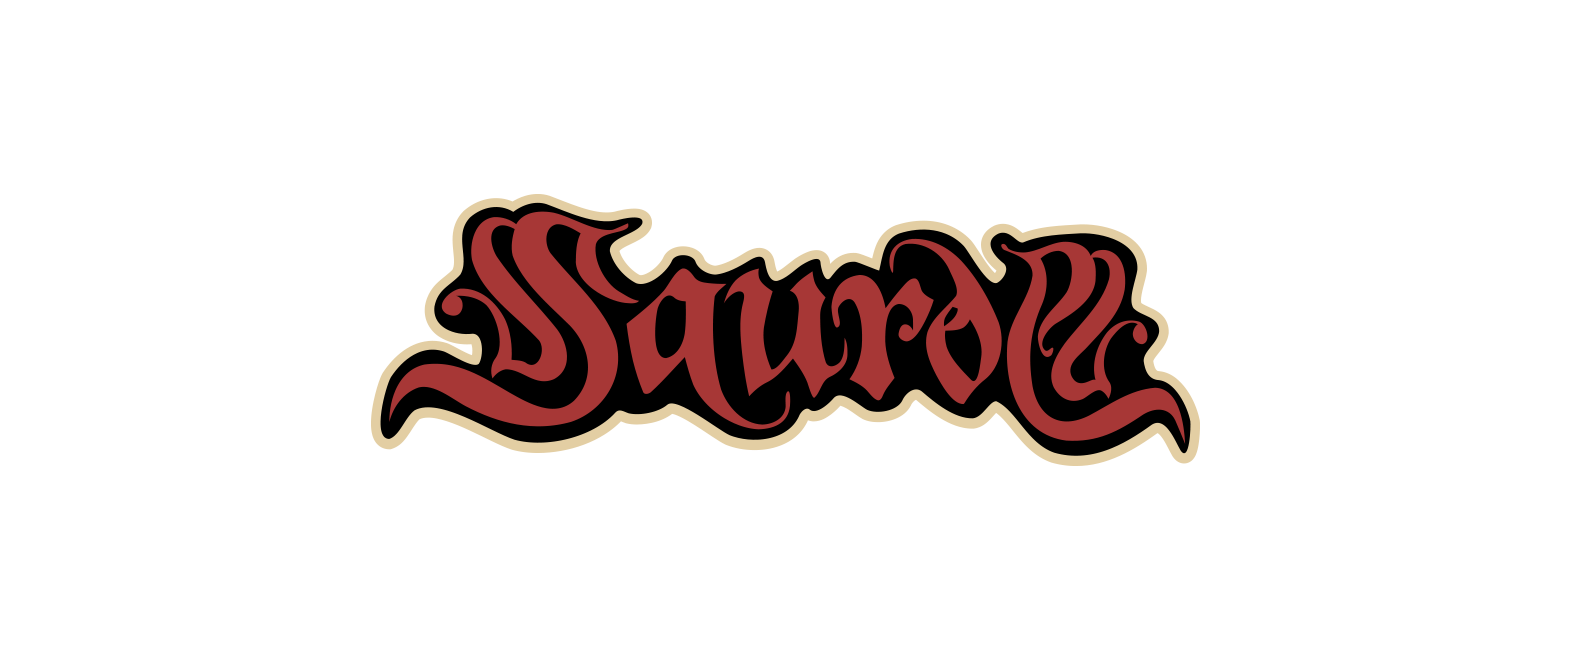 SauronSlide